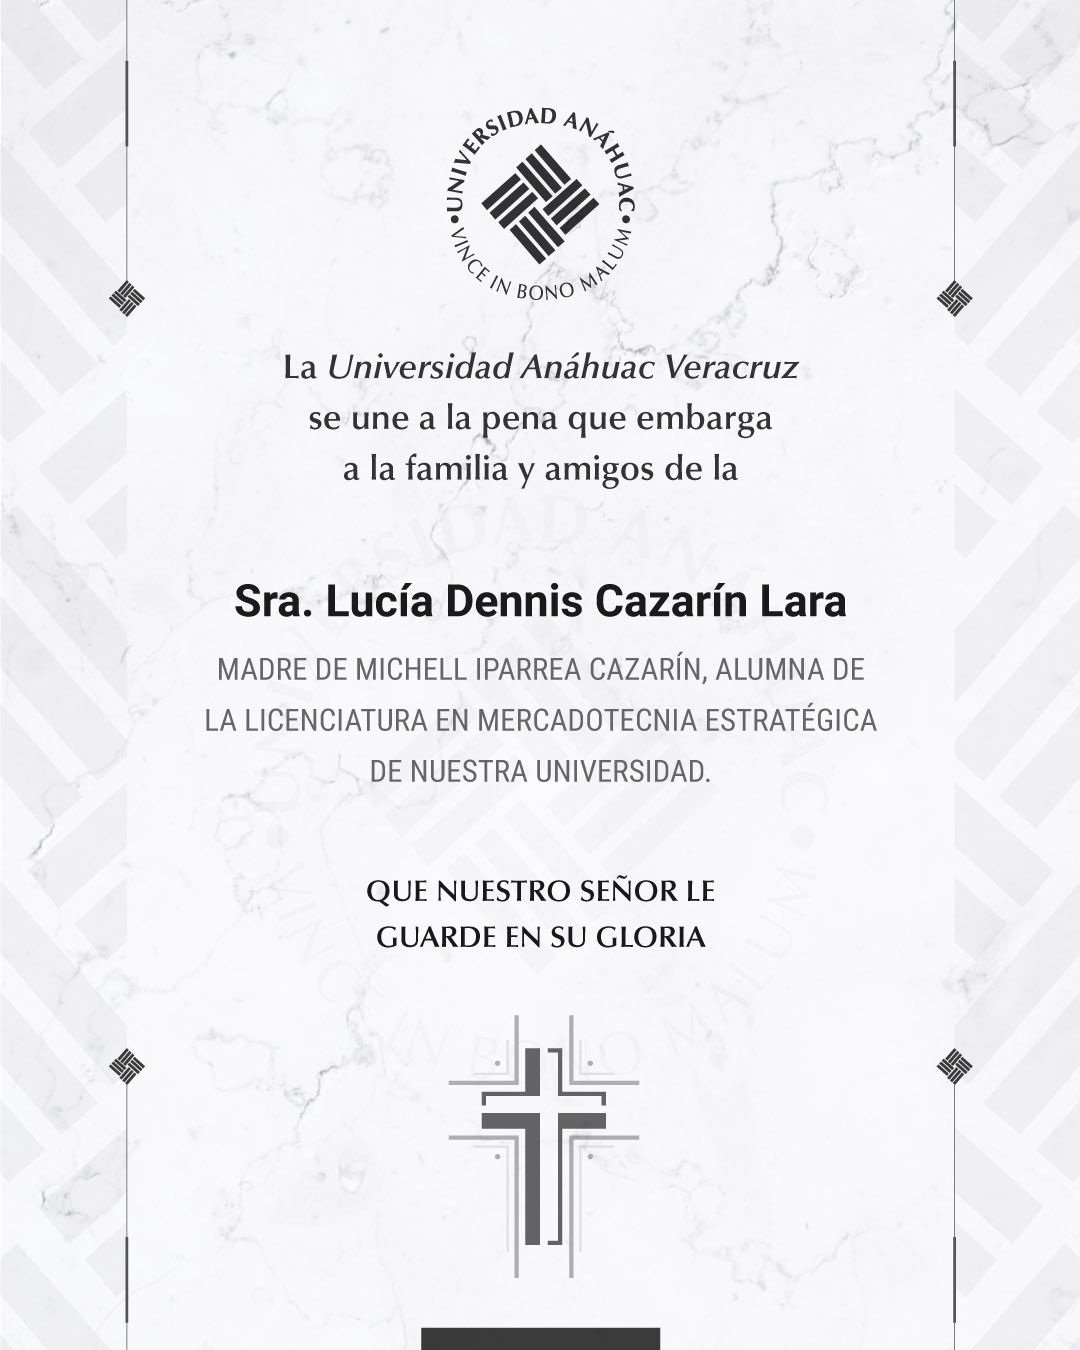 13 / 17 - Sra. Lucía Dennis Cazarín Lara